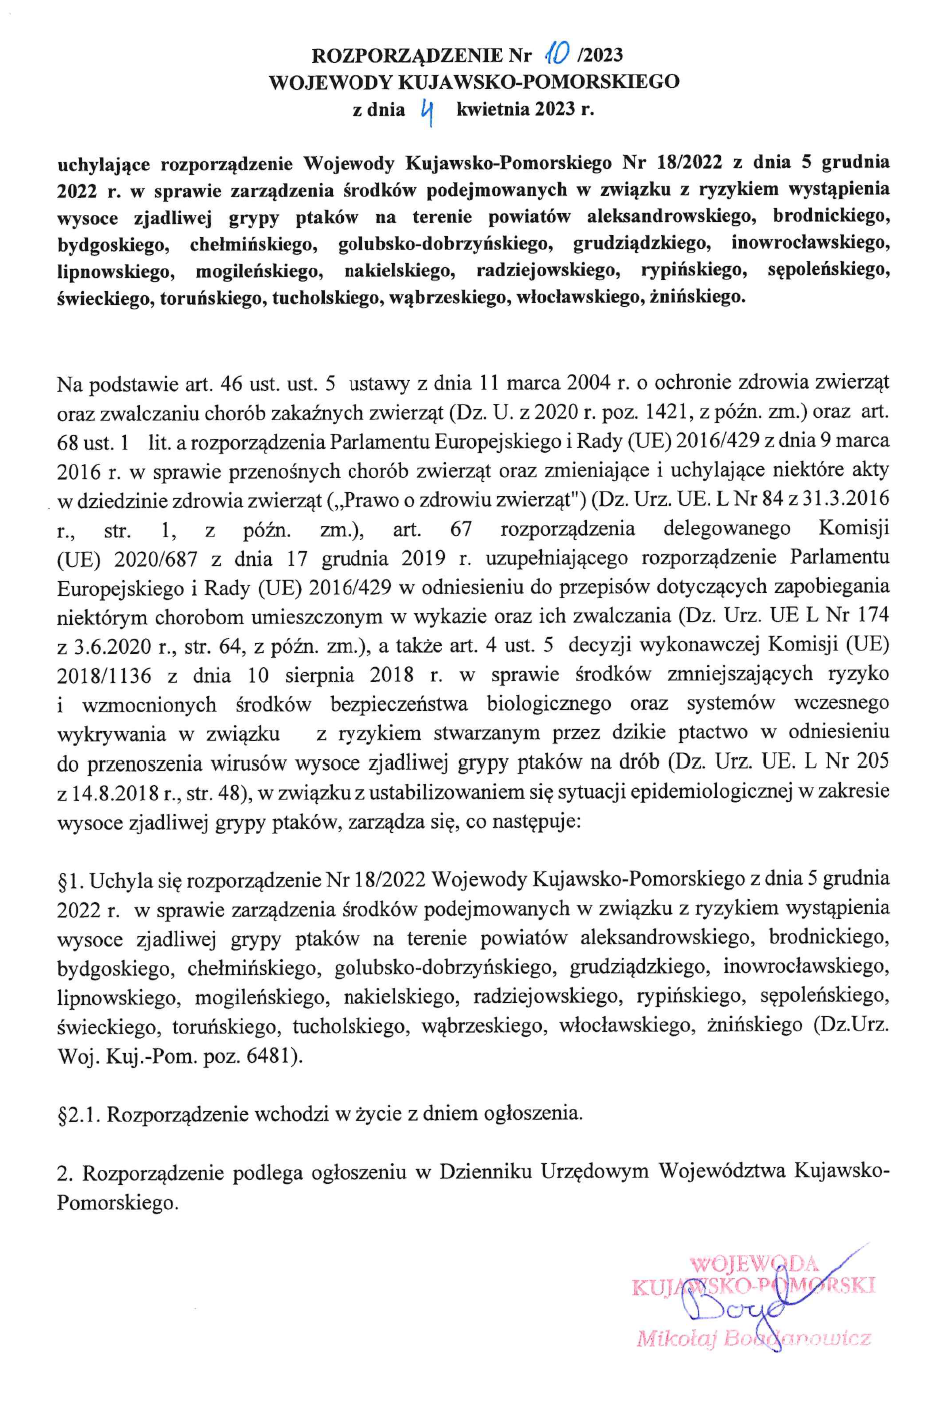 Rozporządzenie 10-2023 Wojewody Kuj-Pom